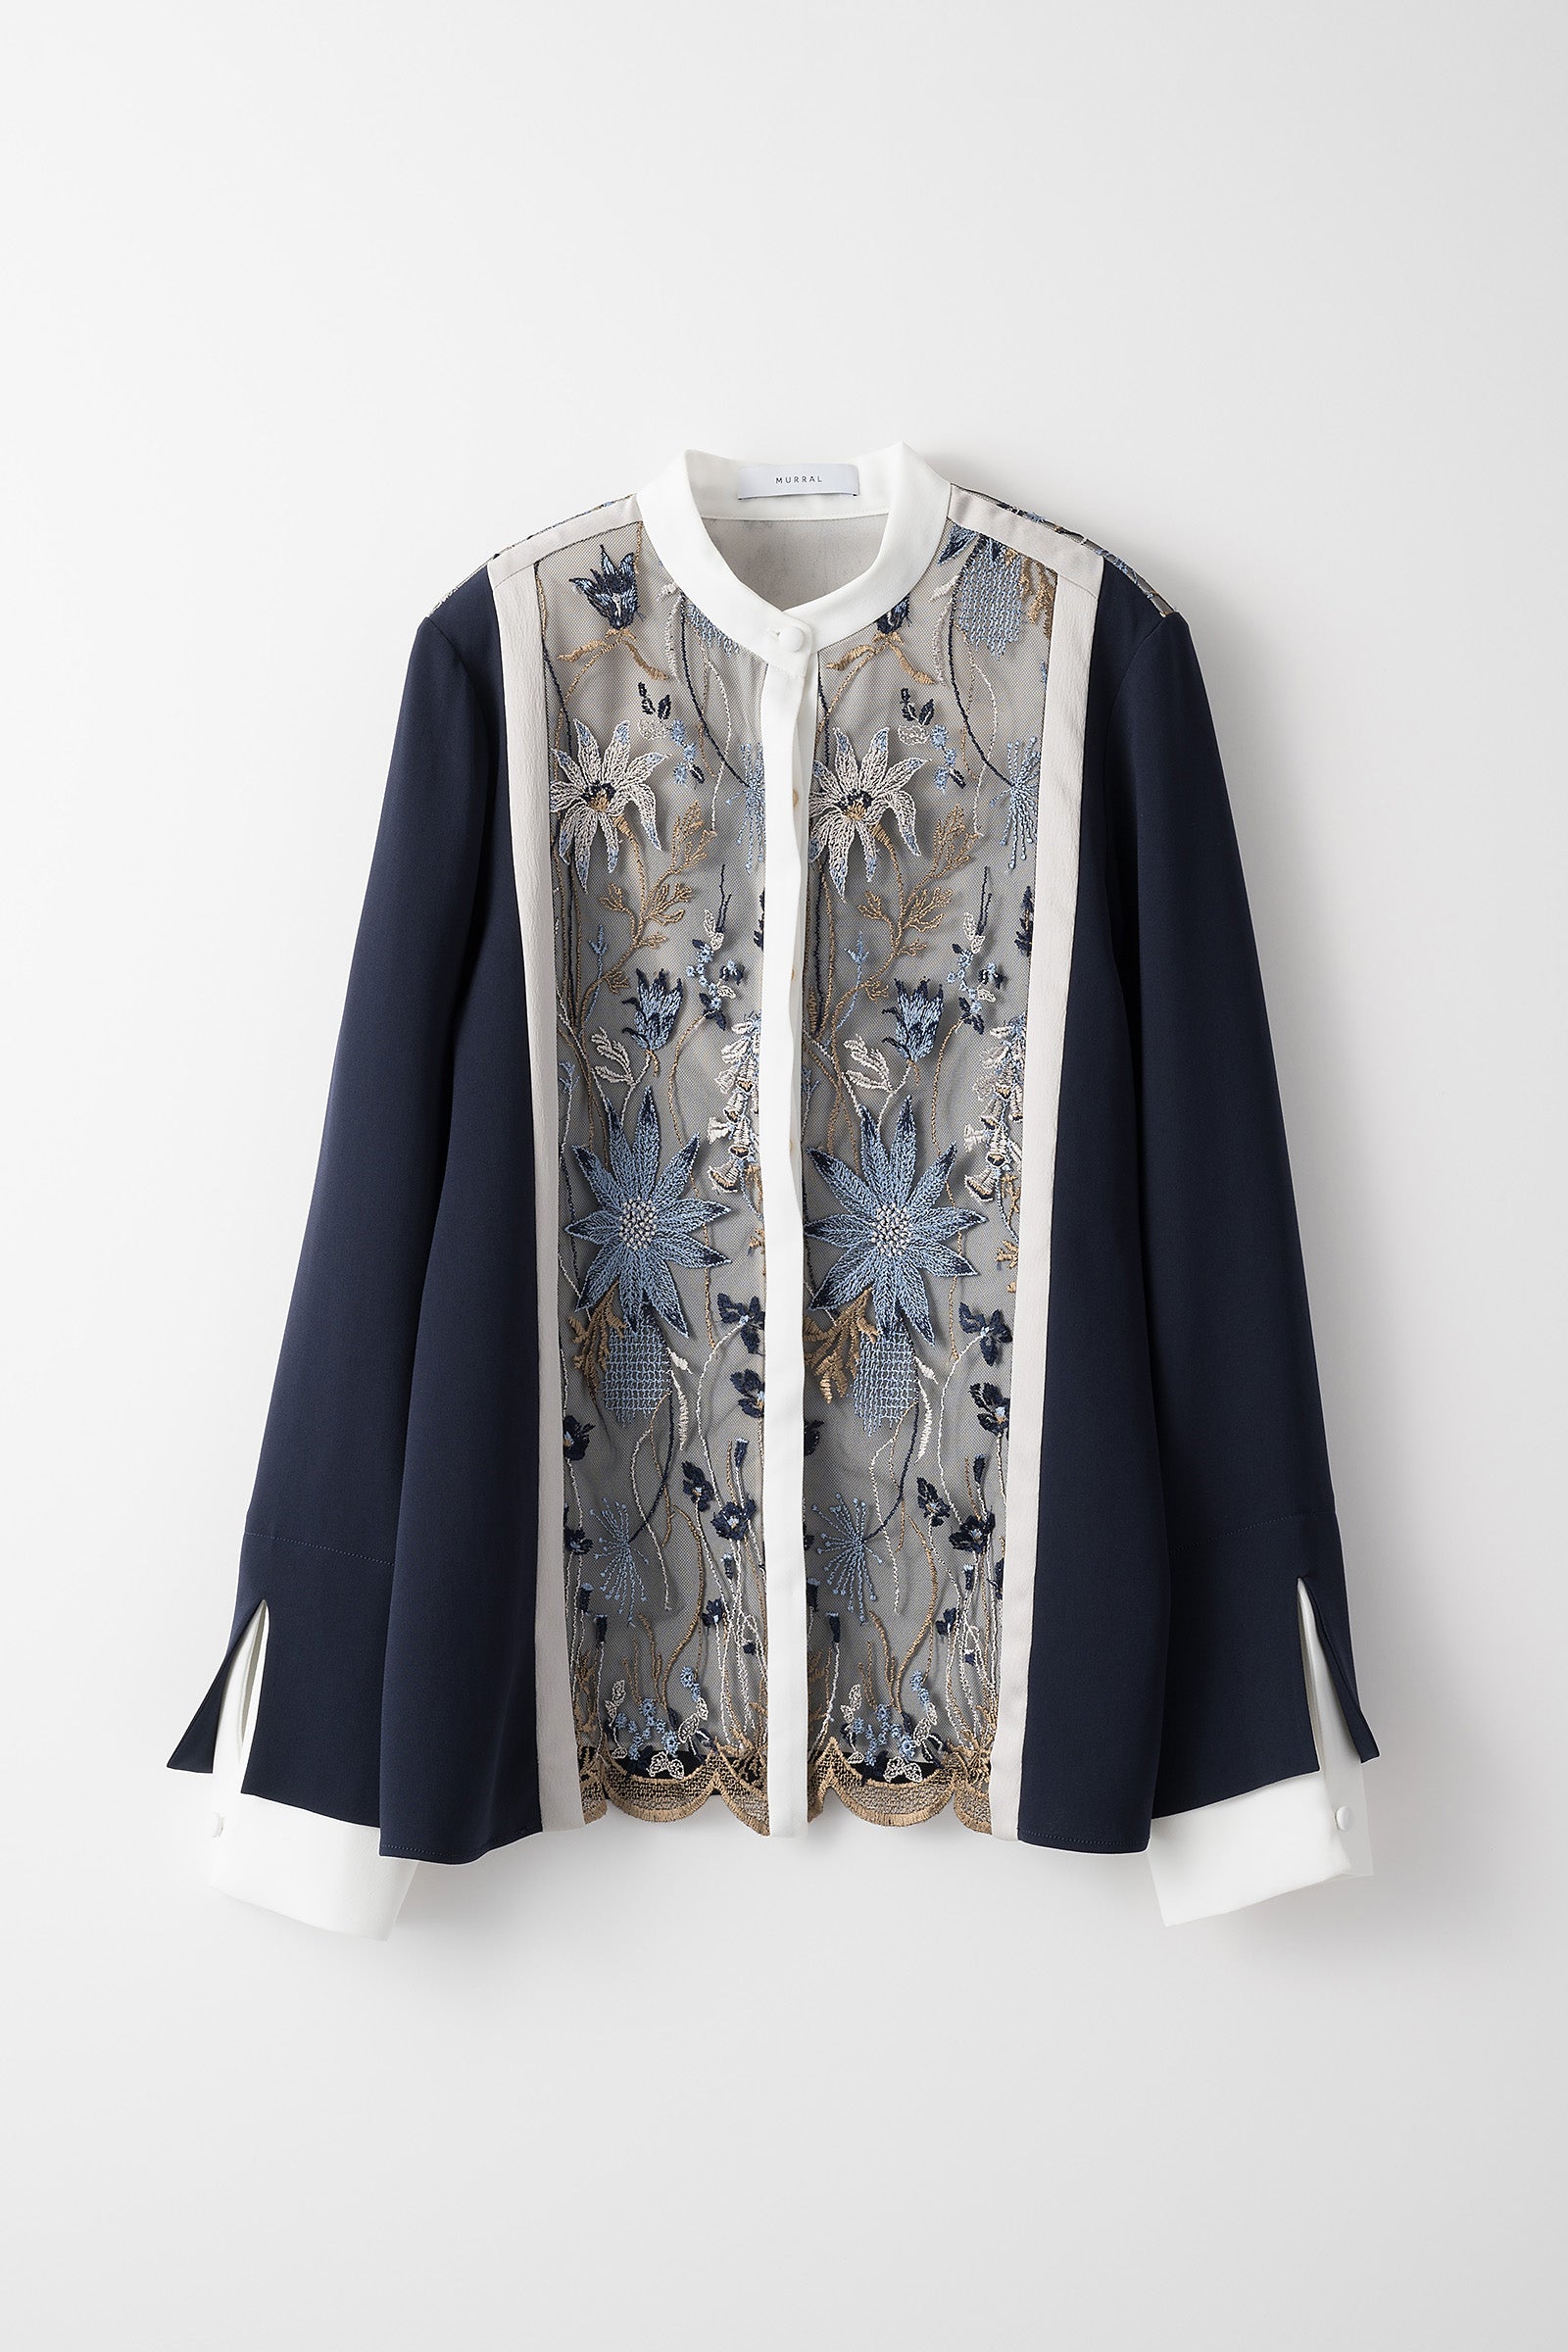 Framed flower blouse (Navy) – MURRAL